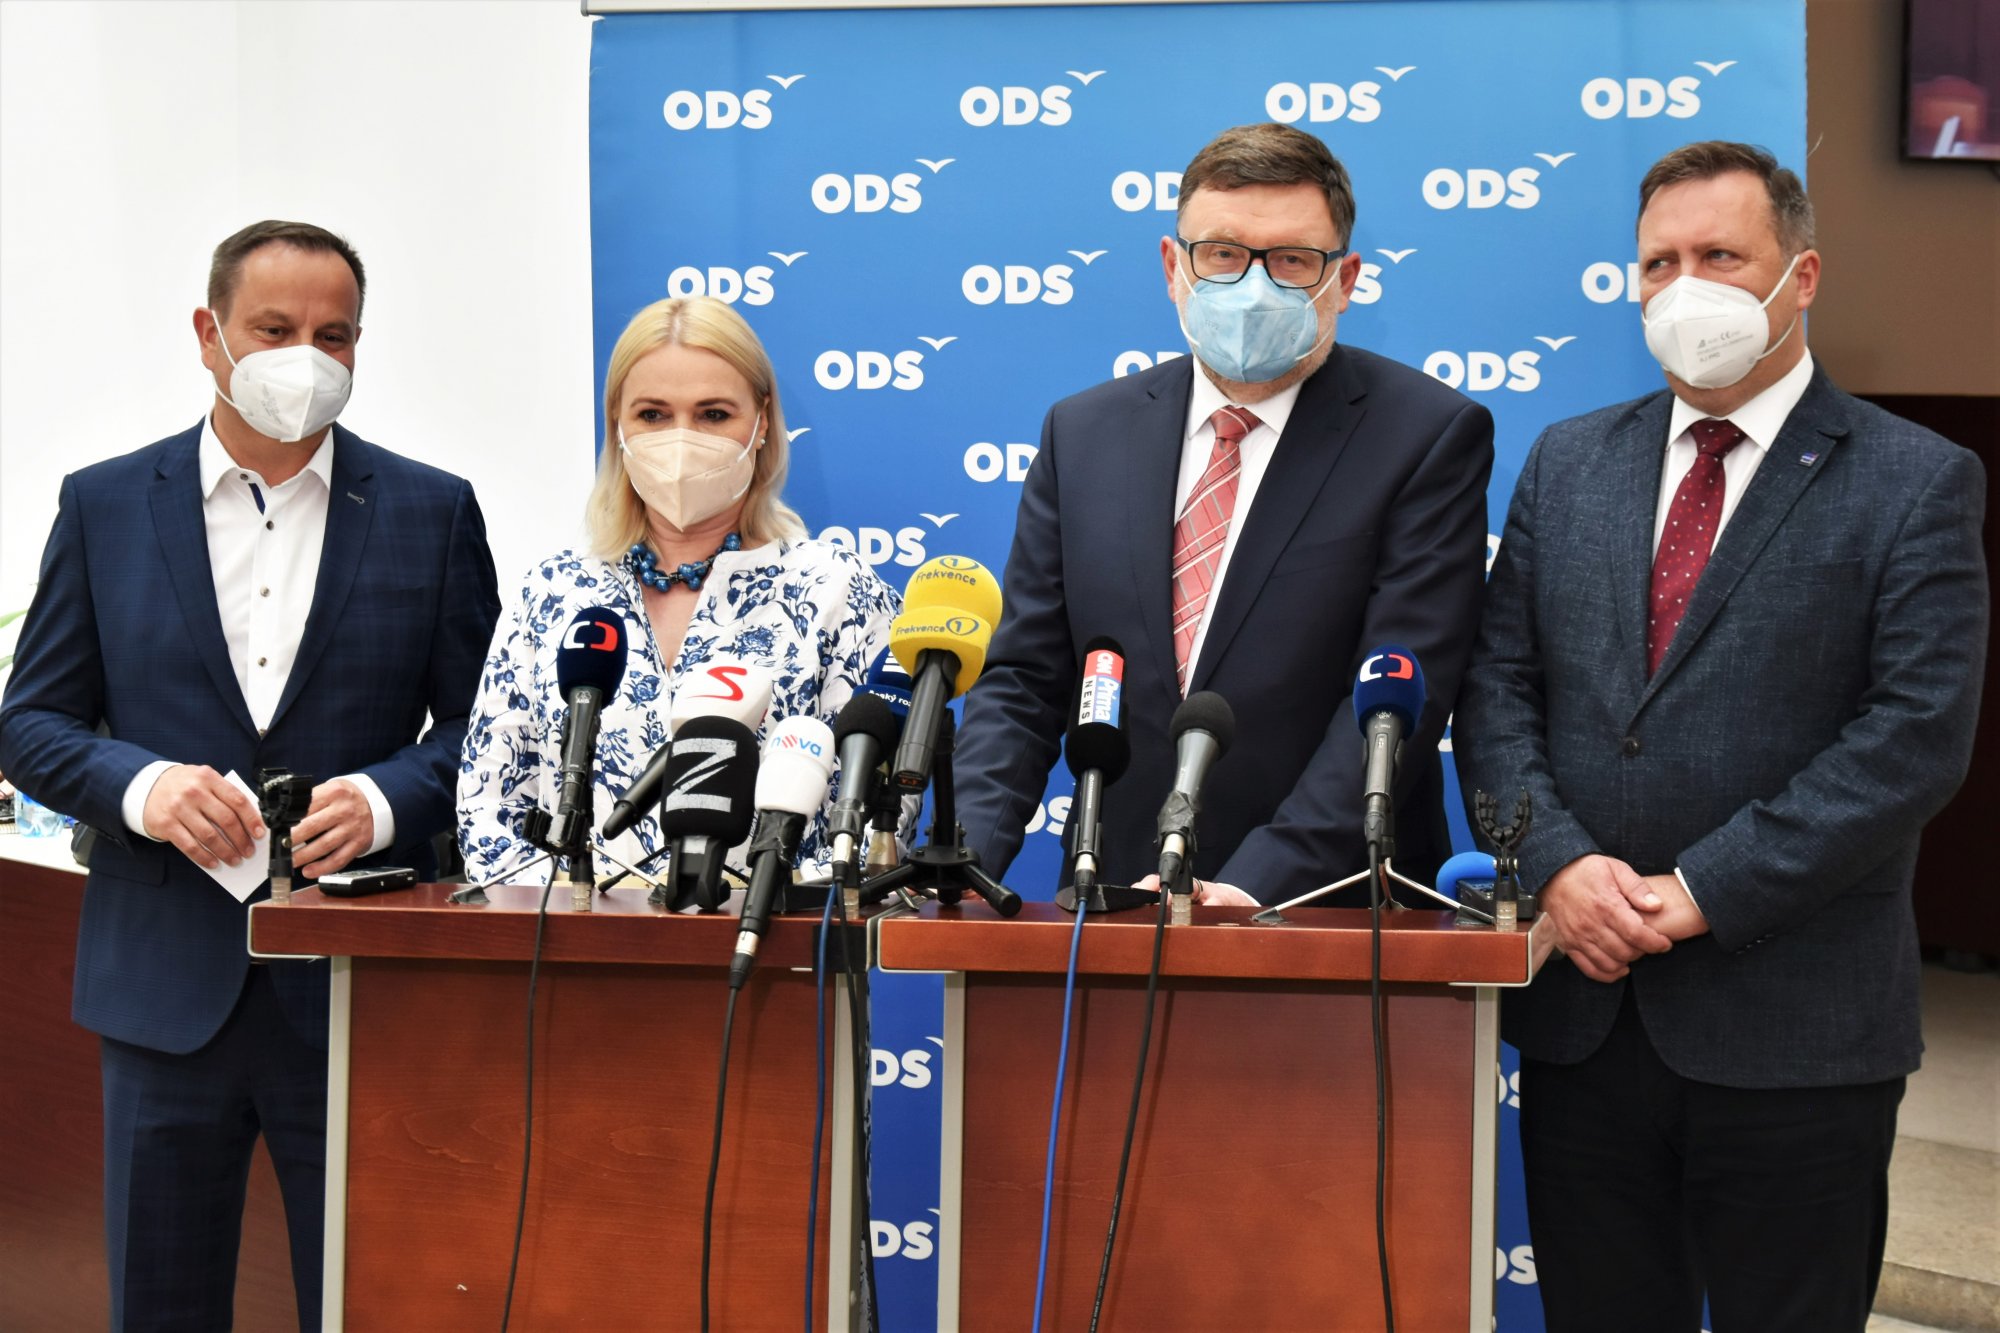 ODS: Koalice SPOLU navrhuje zařazení mimořádného bodu, kterým chce vyhodnotit účinnost vládních opatření během pandemické pohotovosti